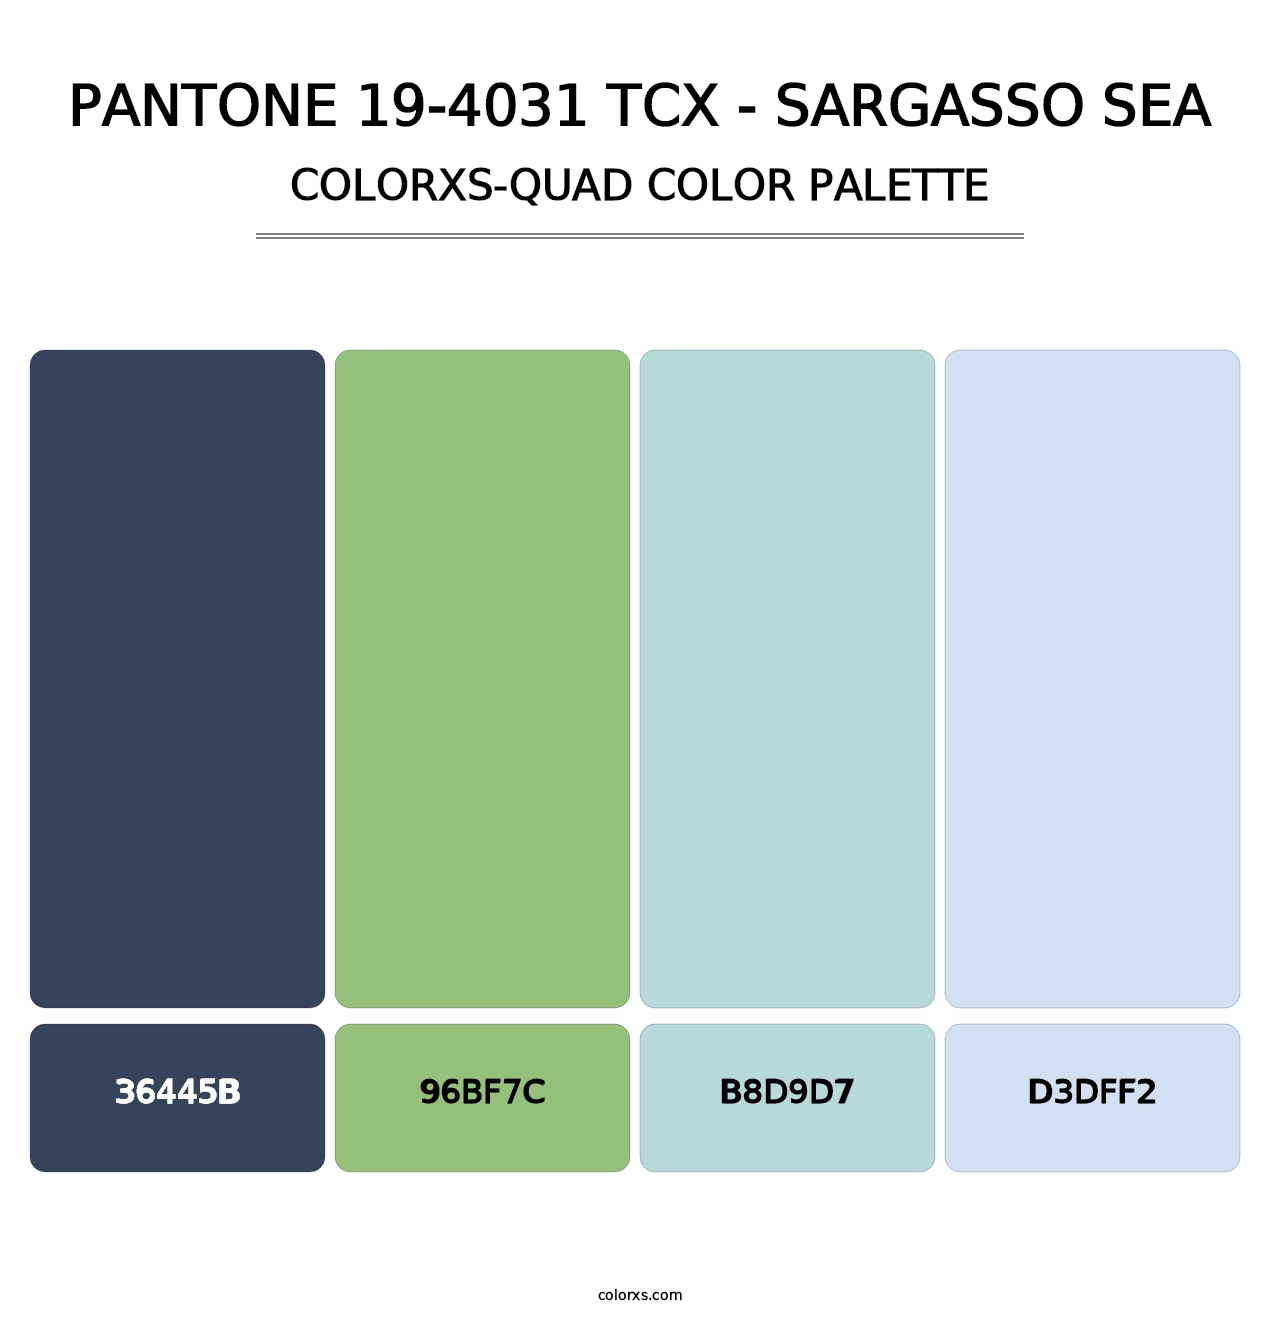 PANTONE 19-4031 TCX - Sargasso Sea - Colorxs Quad Palette